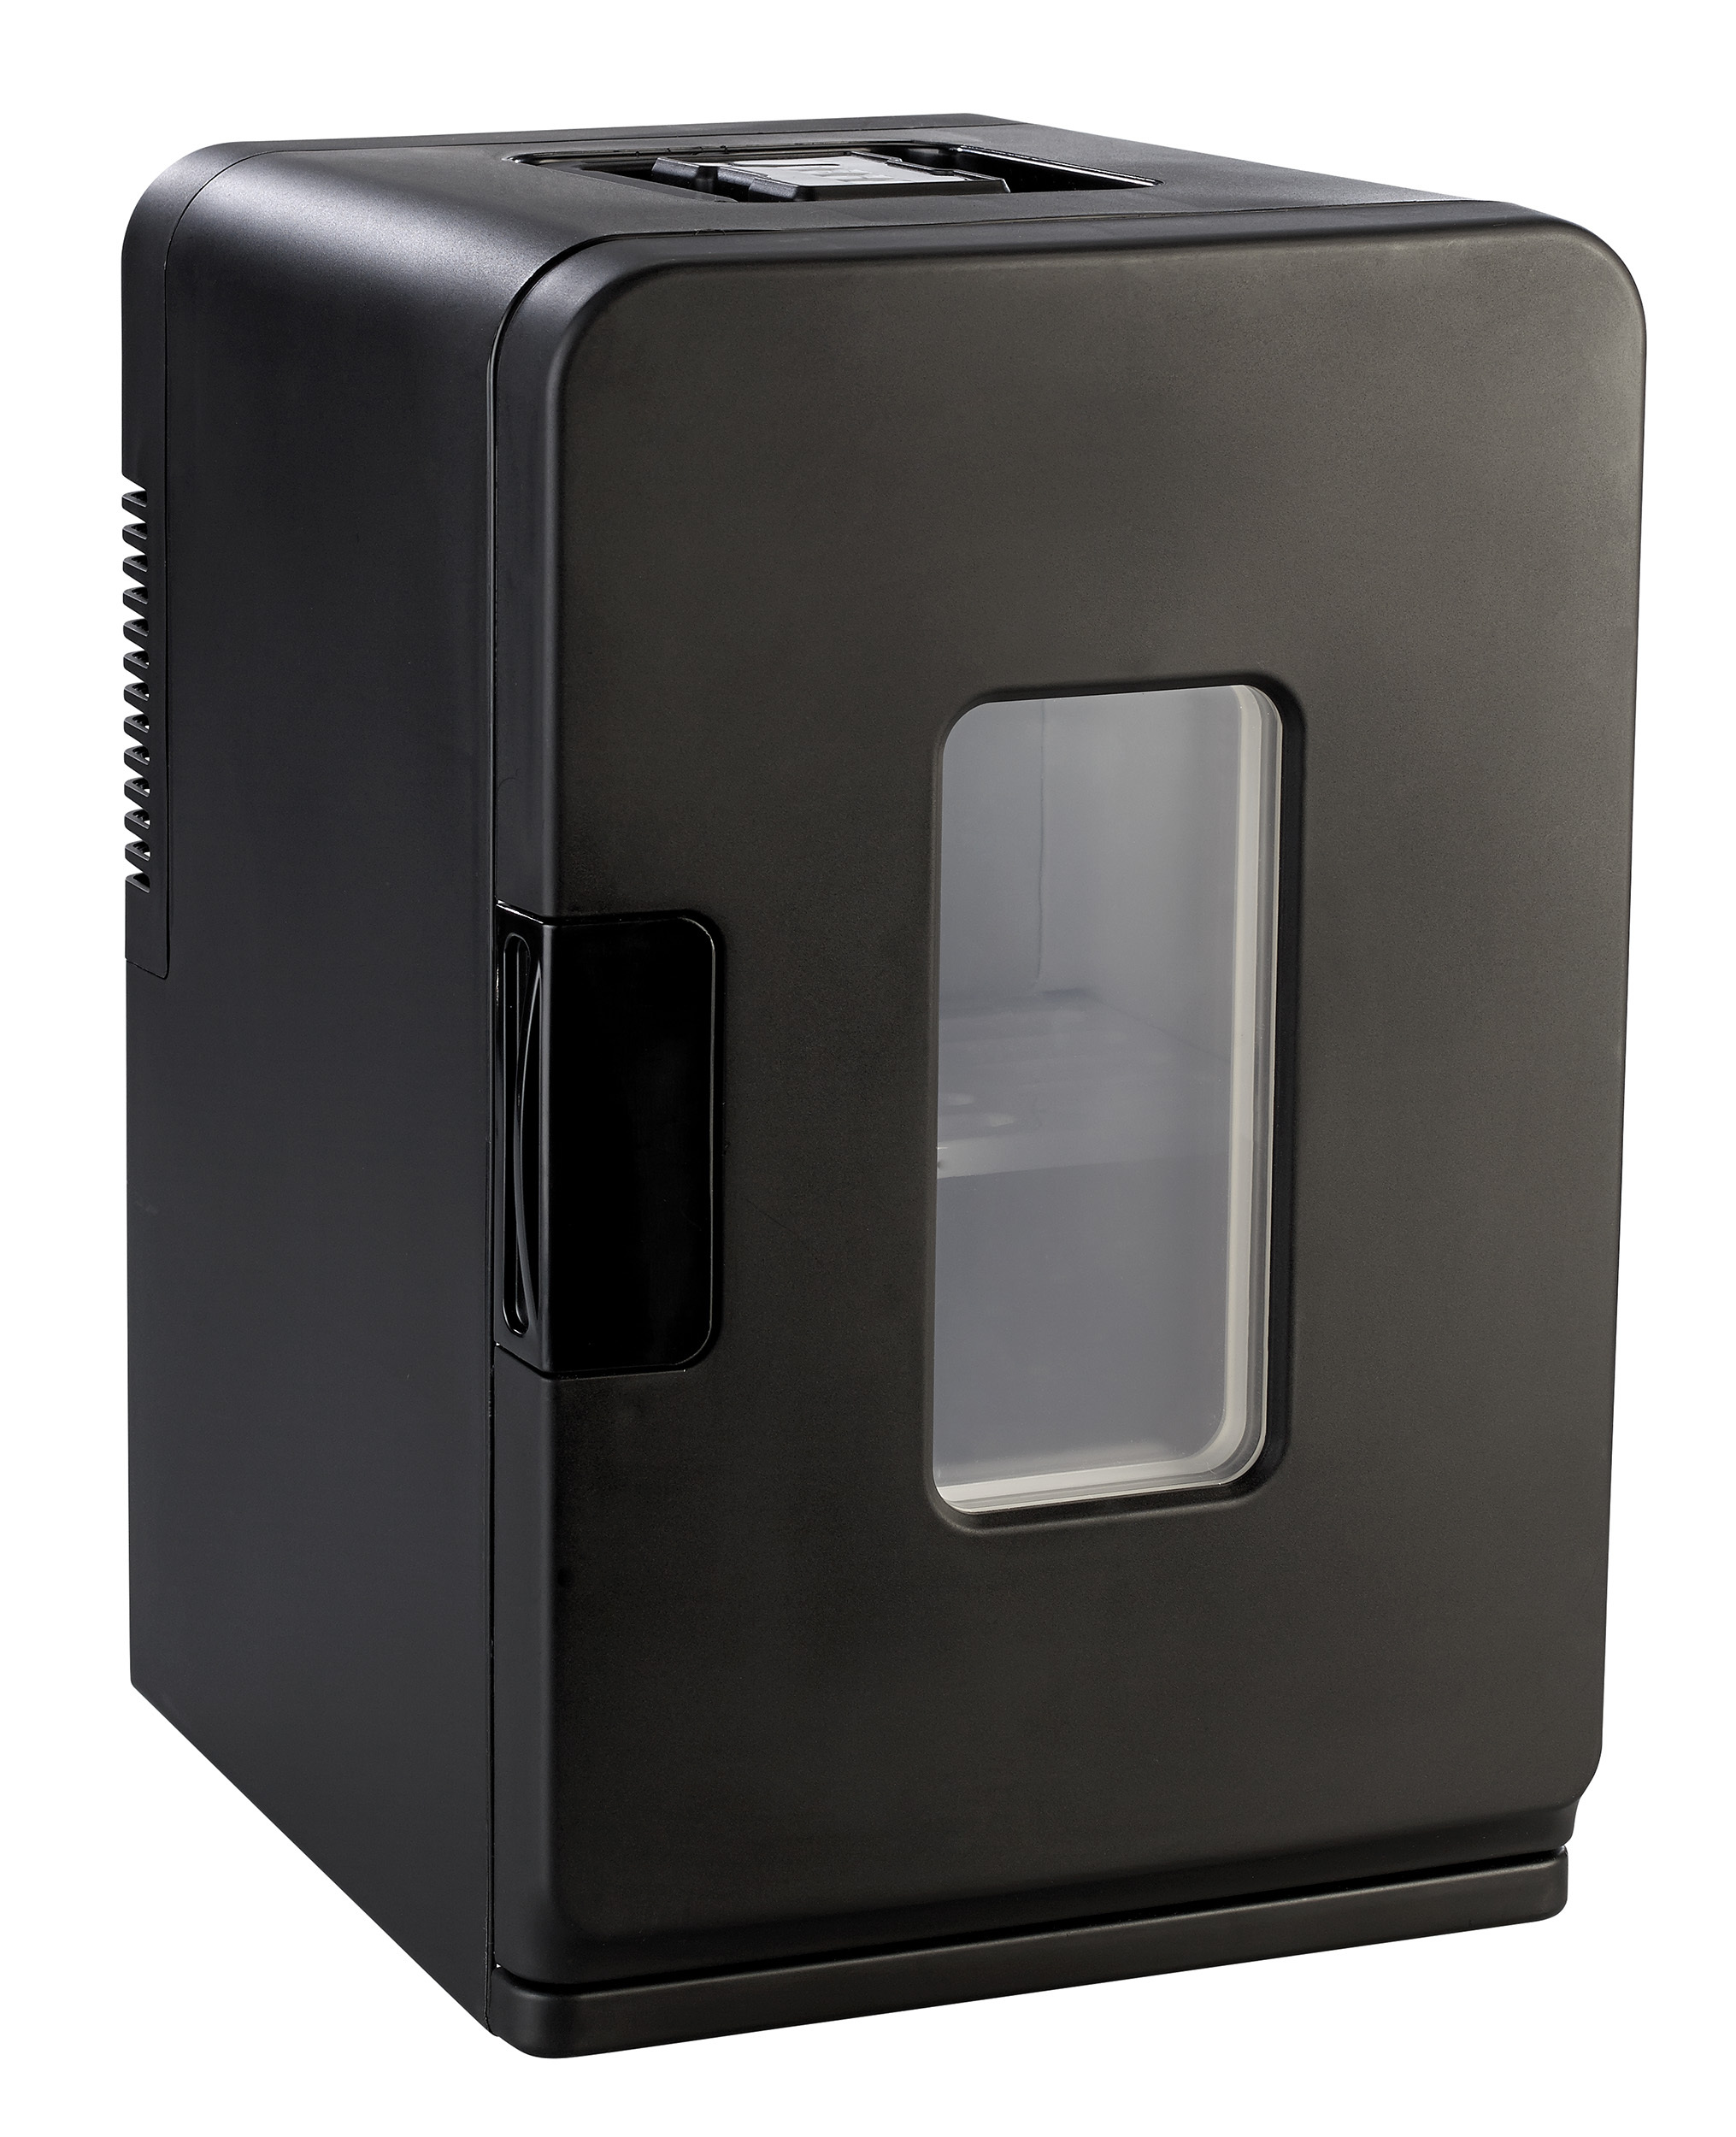 Mini Kühlschrank mit Warmhalte-Funktion - perfekt für unterwegs!